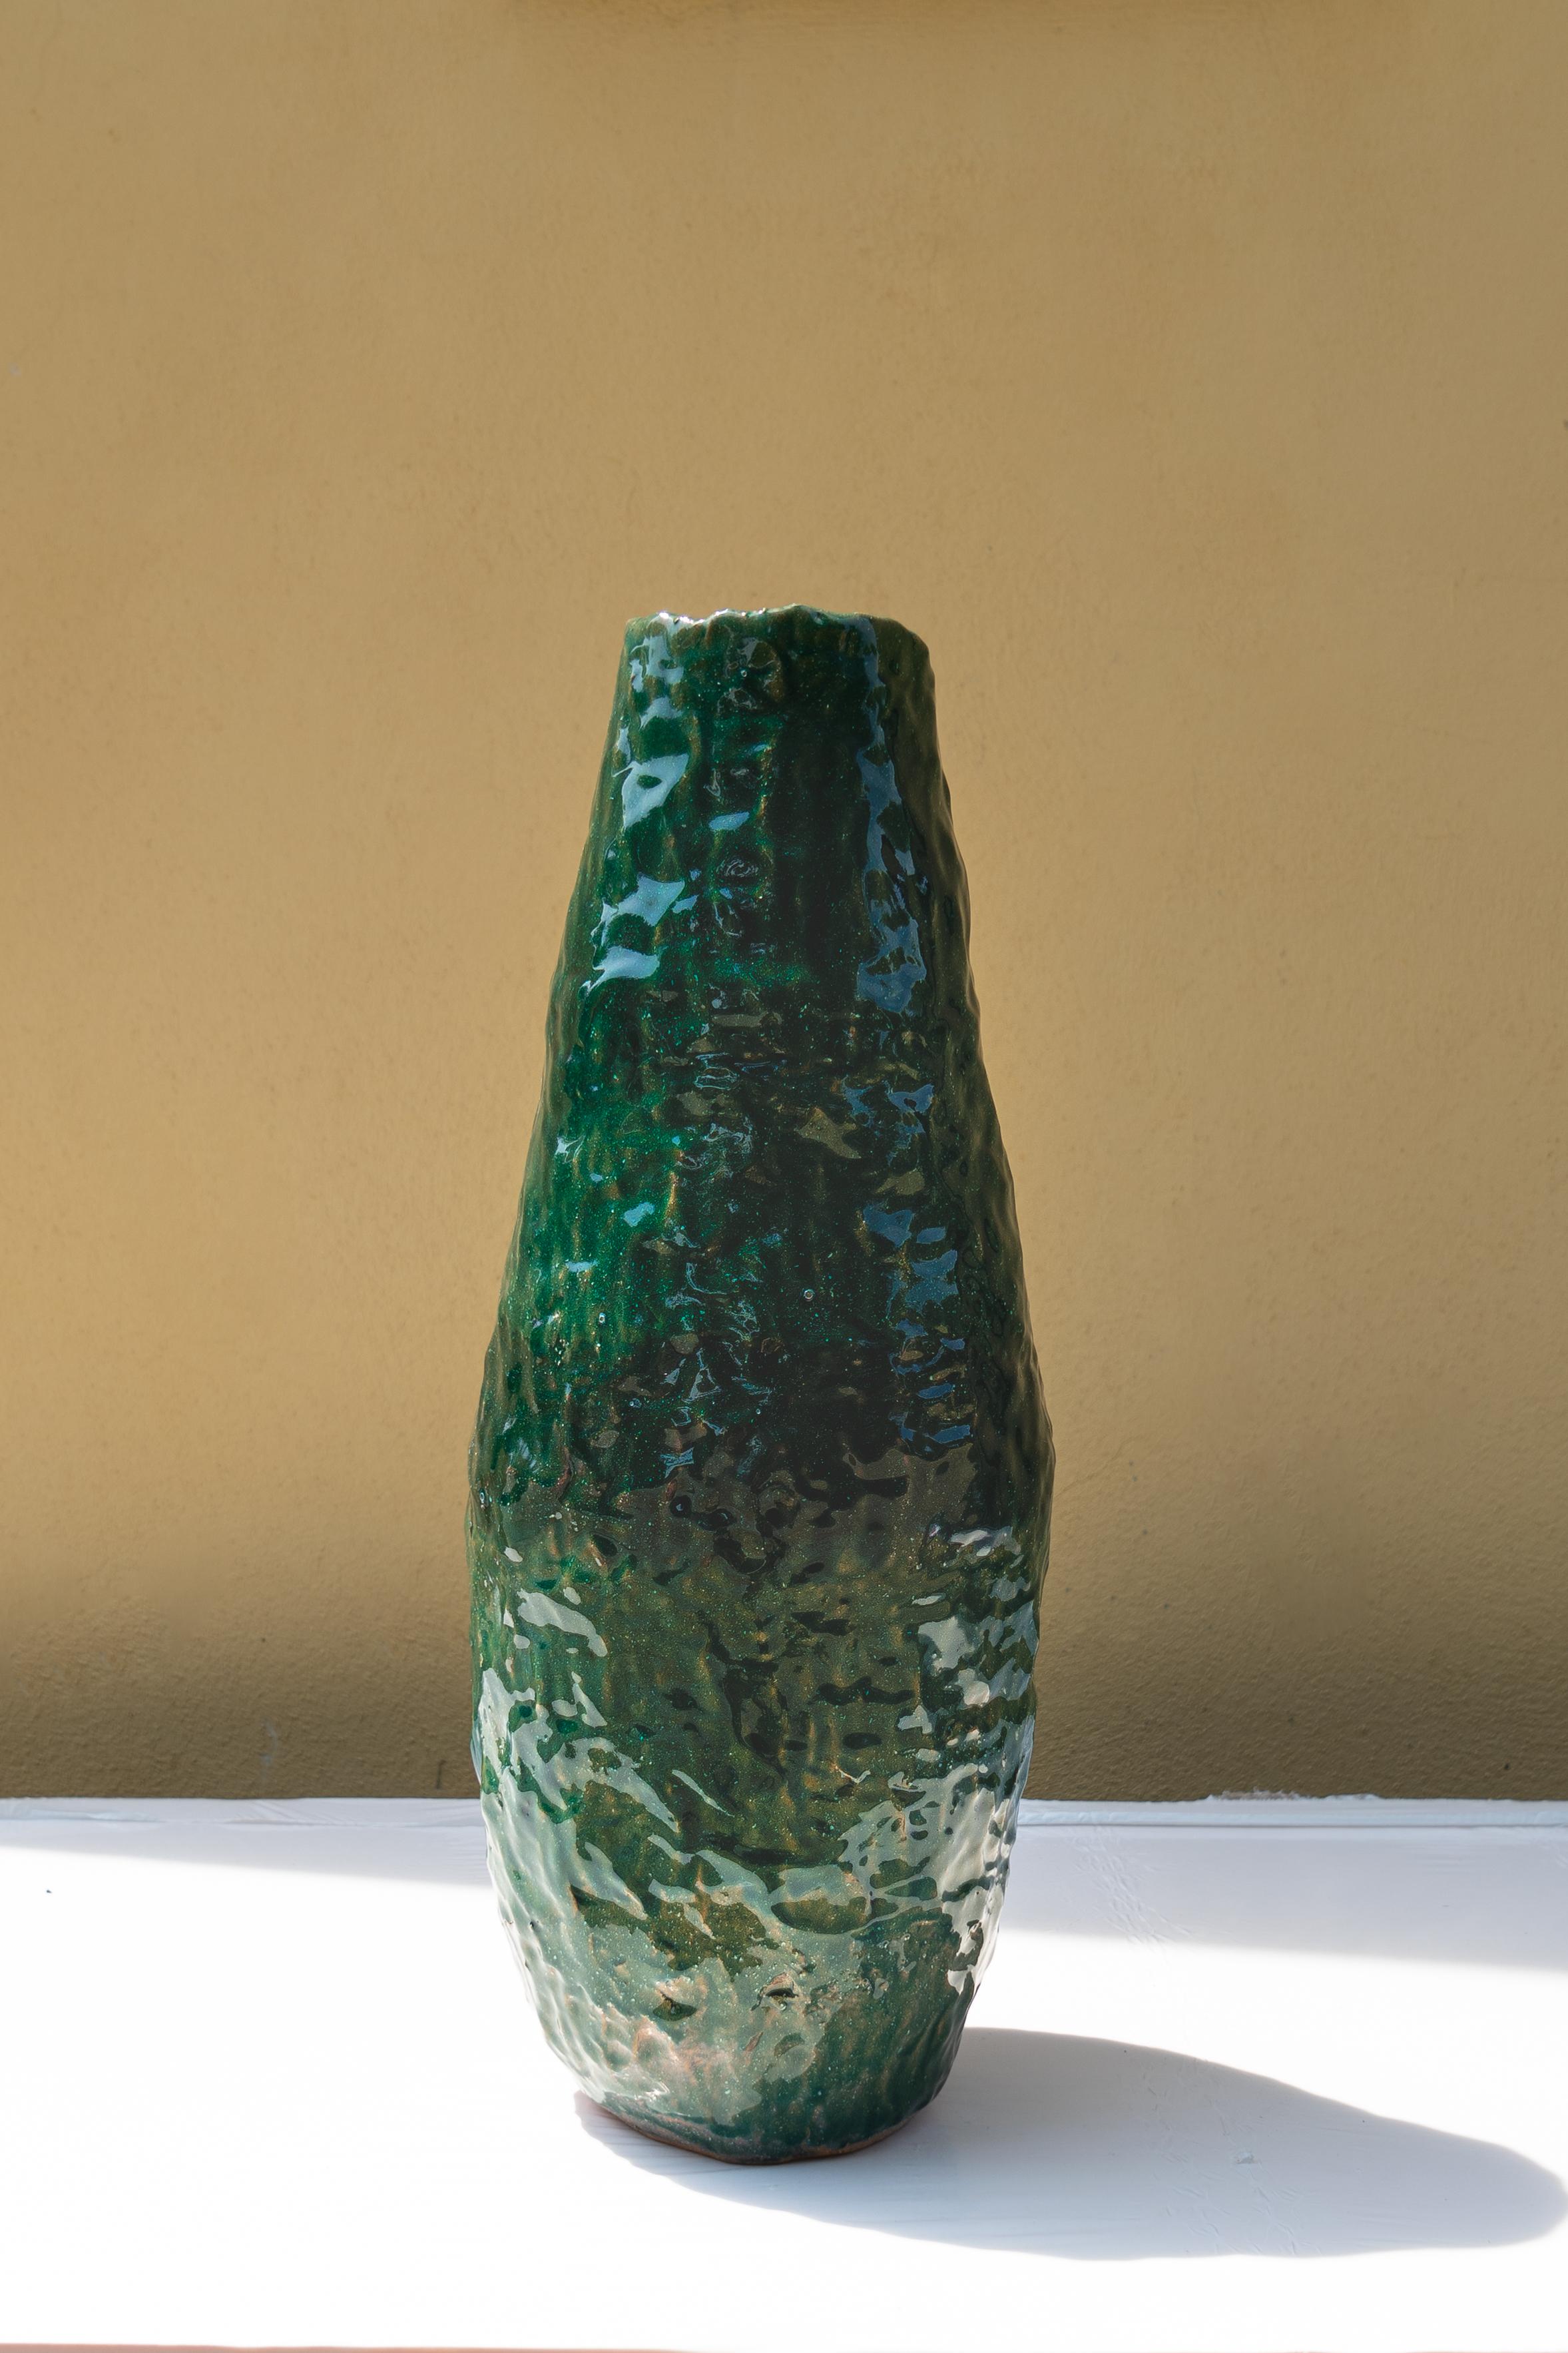 Vase vert de Daniele Giannetti
Dimensions : Ø 22 x H 52 cm : Ø 22 x H 52 cm.
Matériaux : terre cuite vernissée. 

Toutes les pièces sont réalisées en terre cuite de Montelupo, cuite une seule fois, puis colorée par Daniele Giannetti avec une